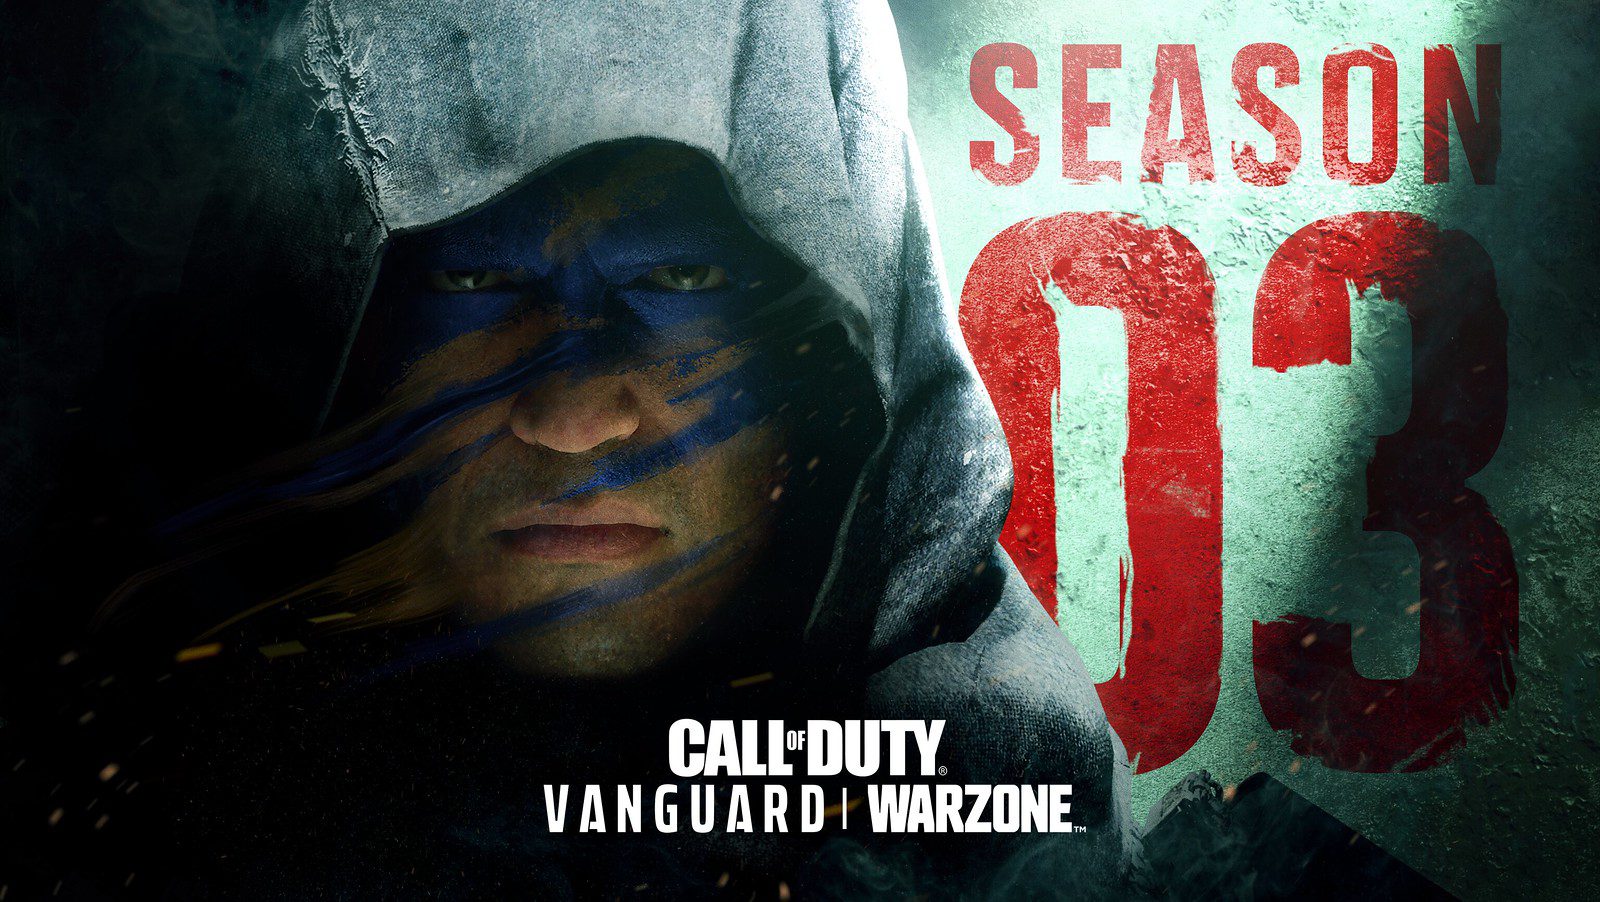 Release Date of Warzone Season 03